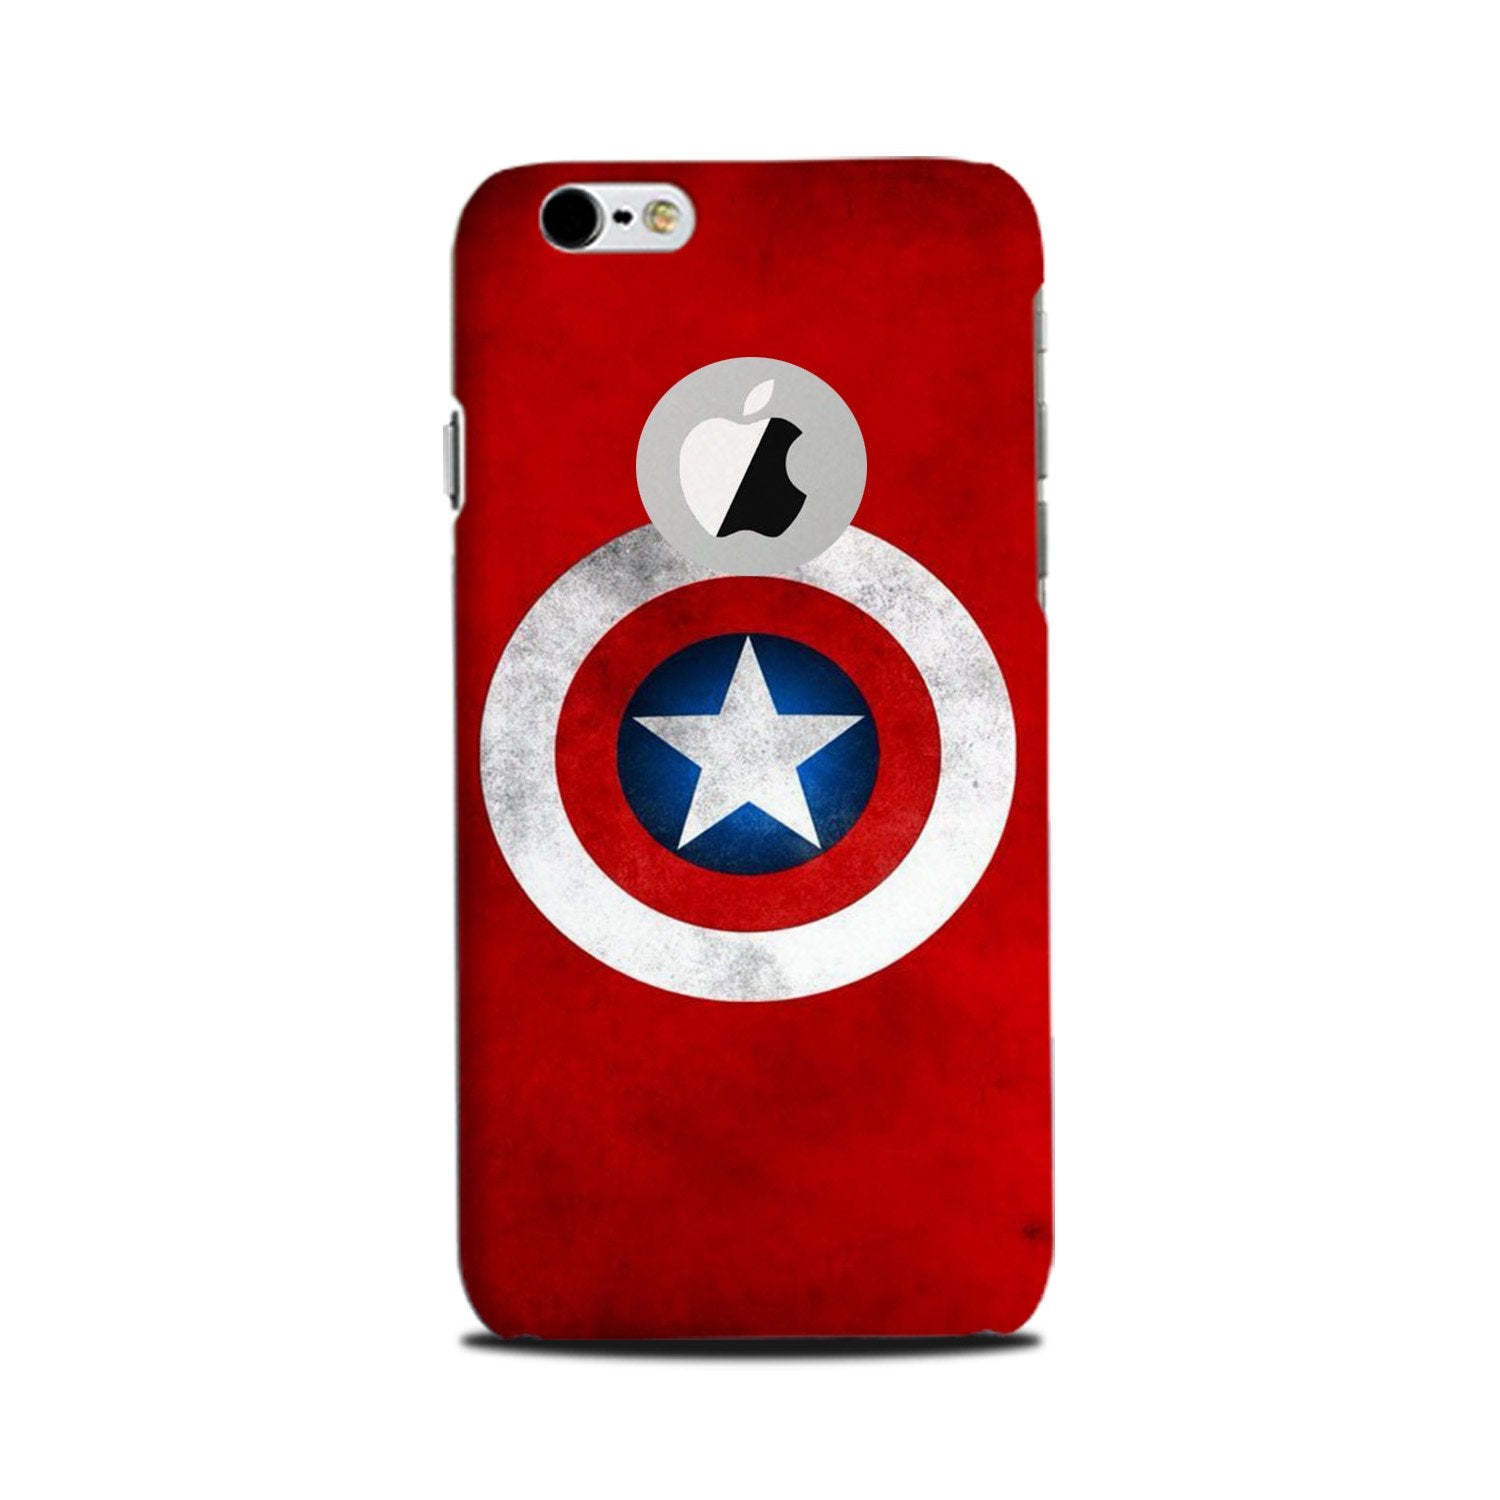 Captain America Case for iPhone 6 Plus / 6s Plus logo cut(Design No. 249)